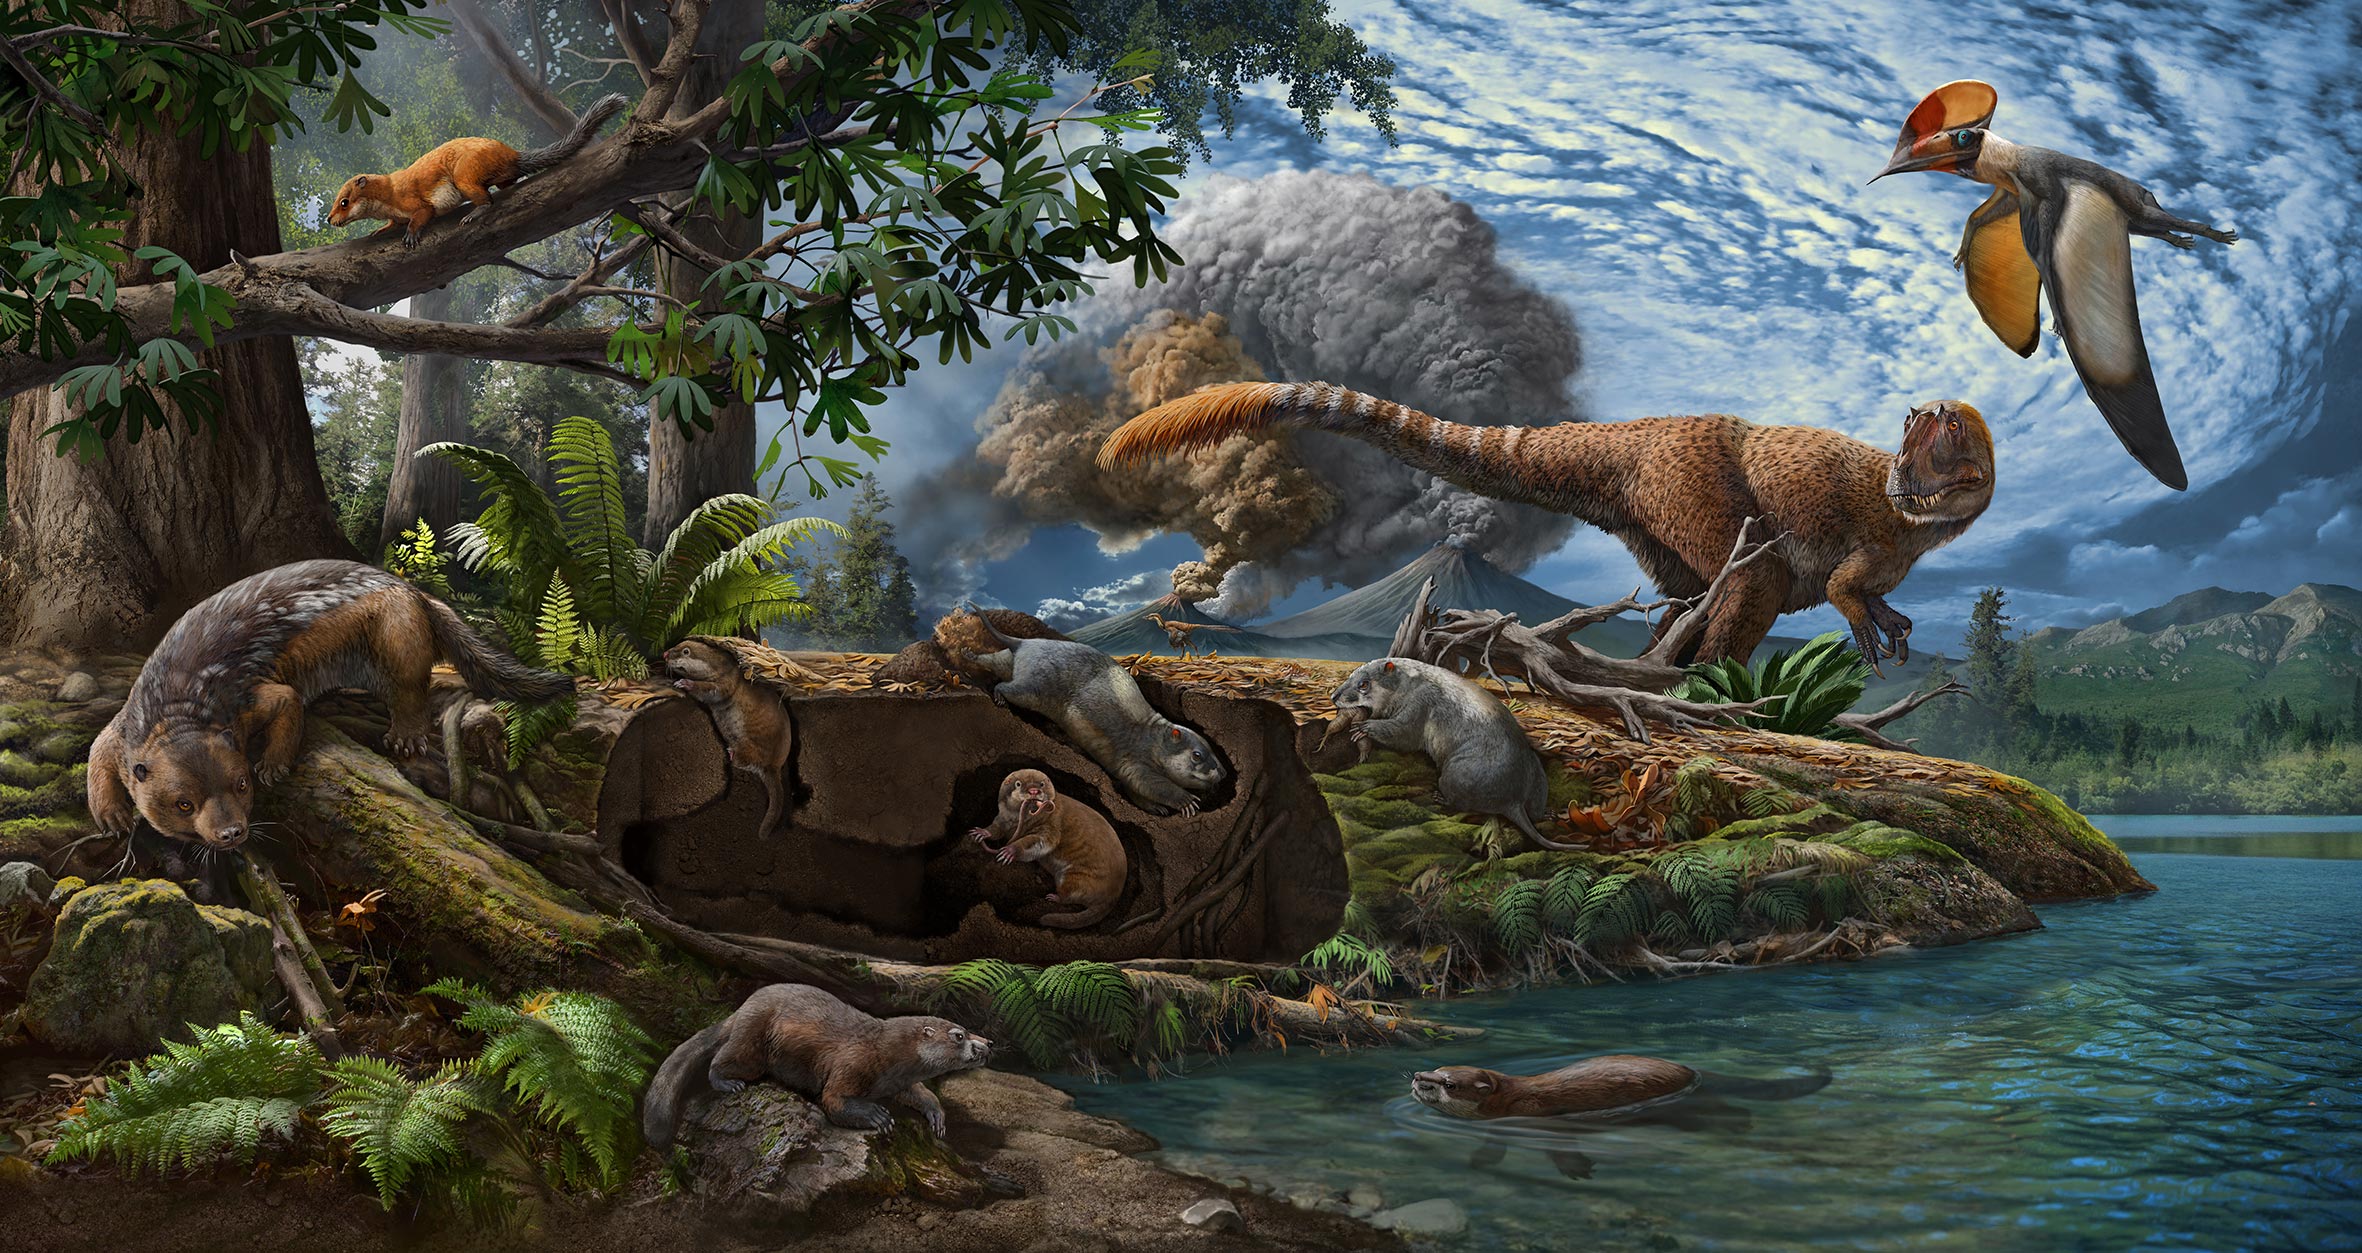 Древние времена динозавров. Чжао Чжуан палеоарт. Юрский период мезозойской эры. Меловой период мезозойской эры. Млекопитающие Юрского периода.